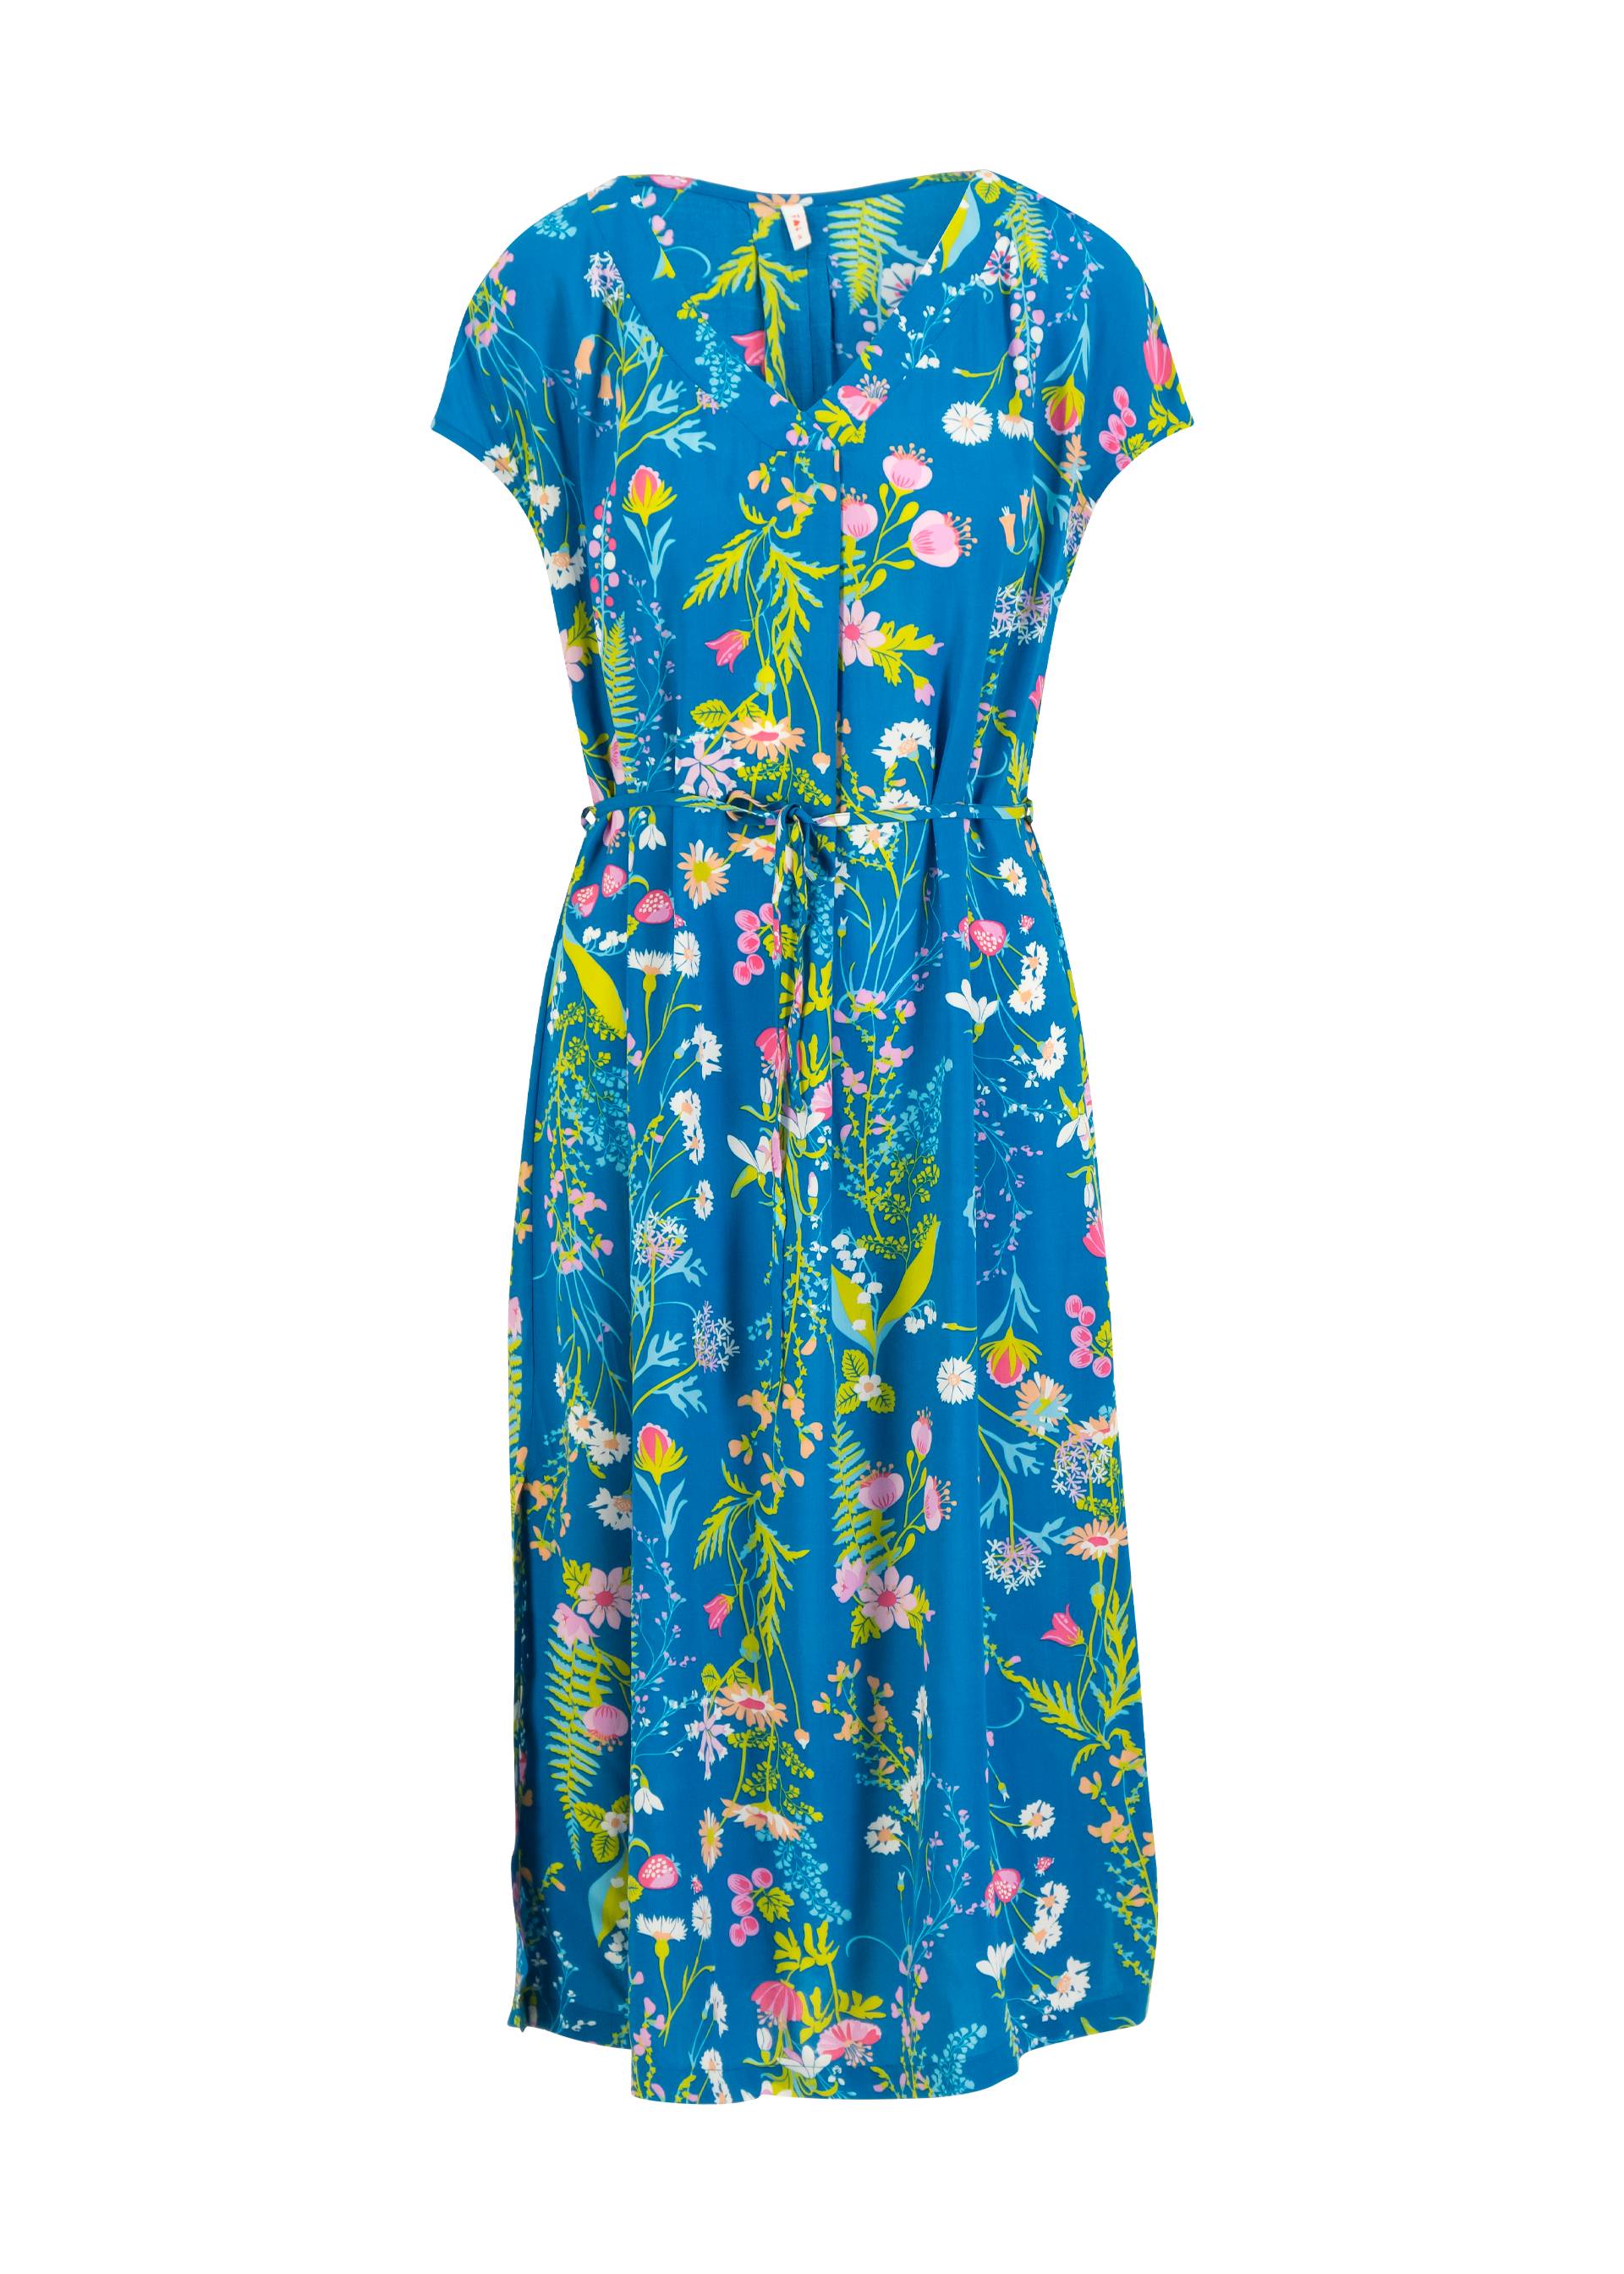 Midi Dress Total Liberty Maniac, greek midsummer night's dream, Dresses, Blue